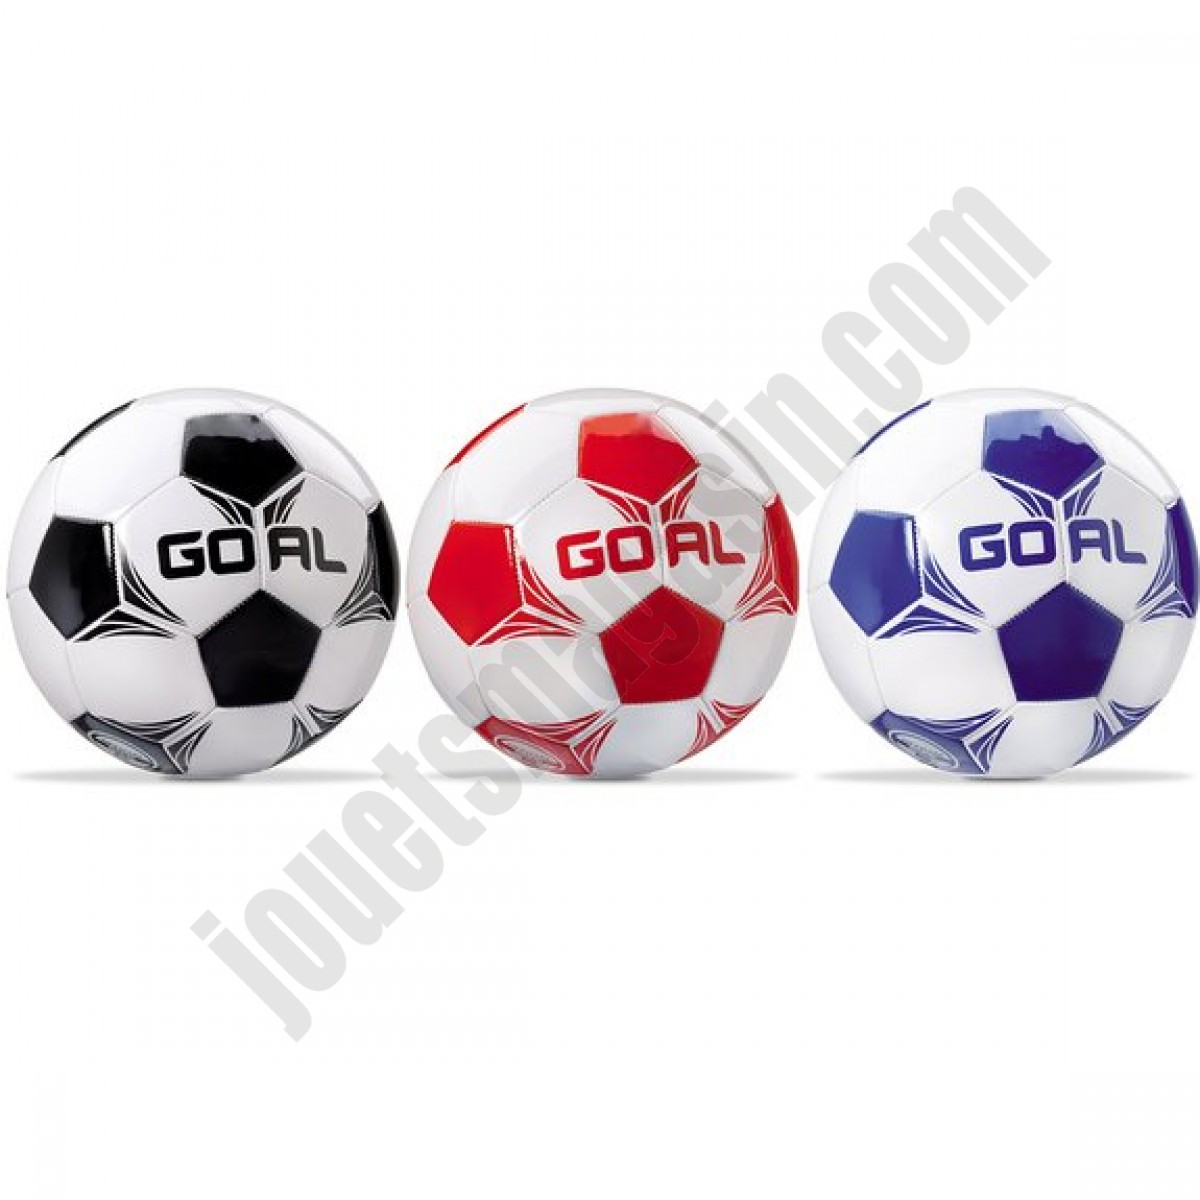 Ballon de Football Goal Taille 5 En promotion - Ballon de Football Goal Taille 5 En promotion